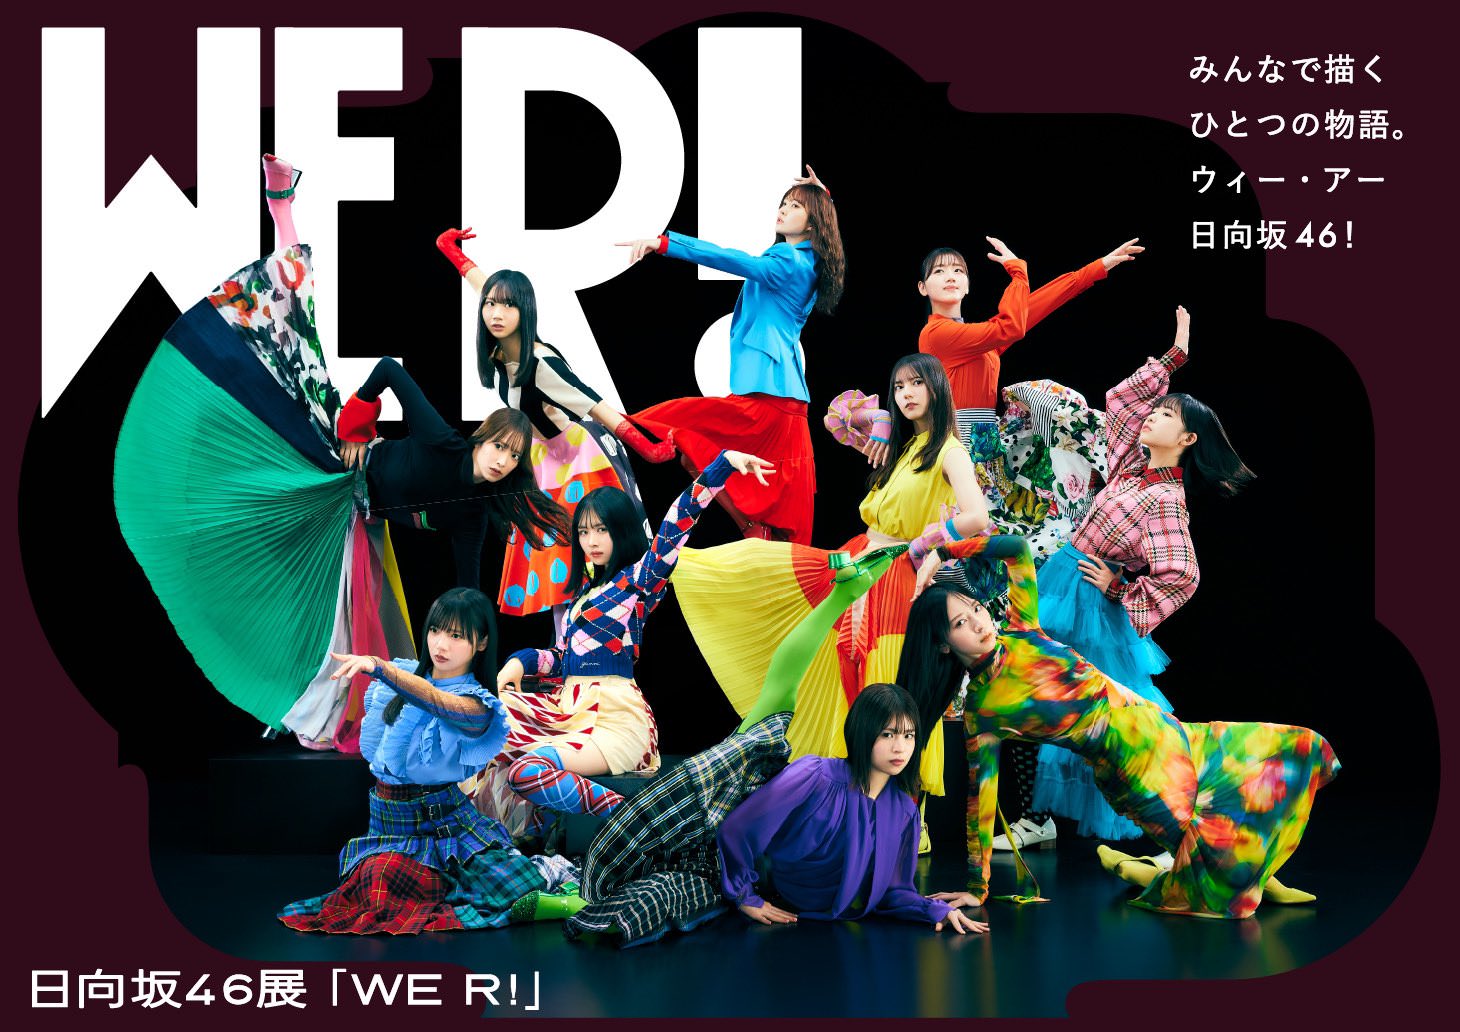 日向坂46展「WE R!」in 六本木ミュージアム 3月1日より開催!